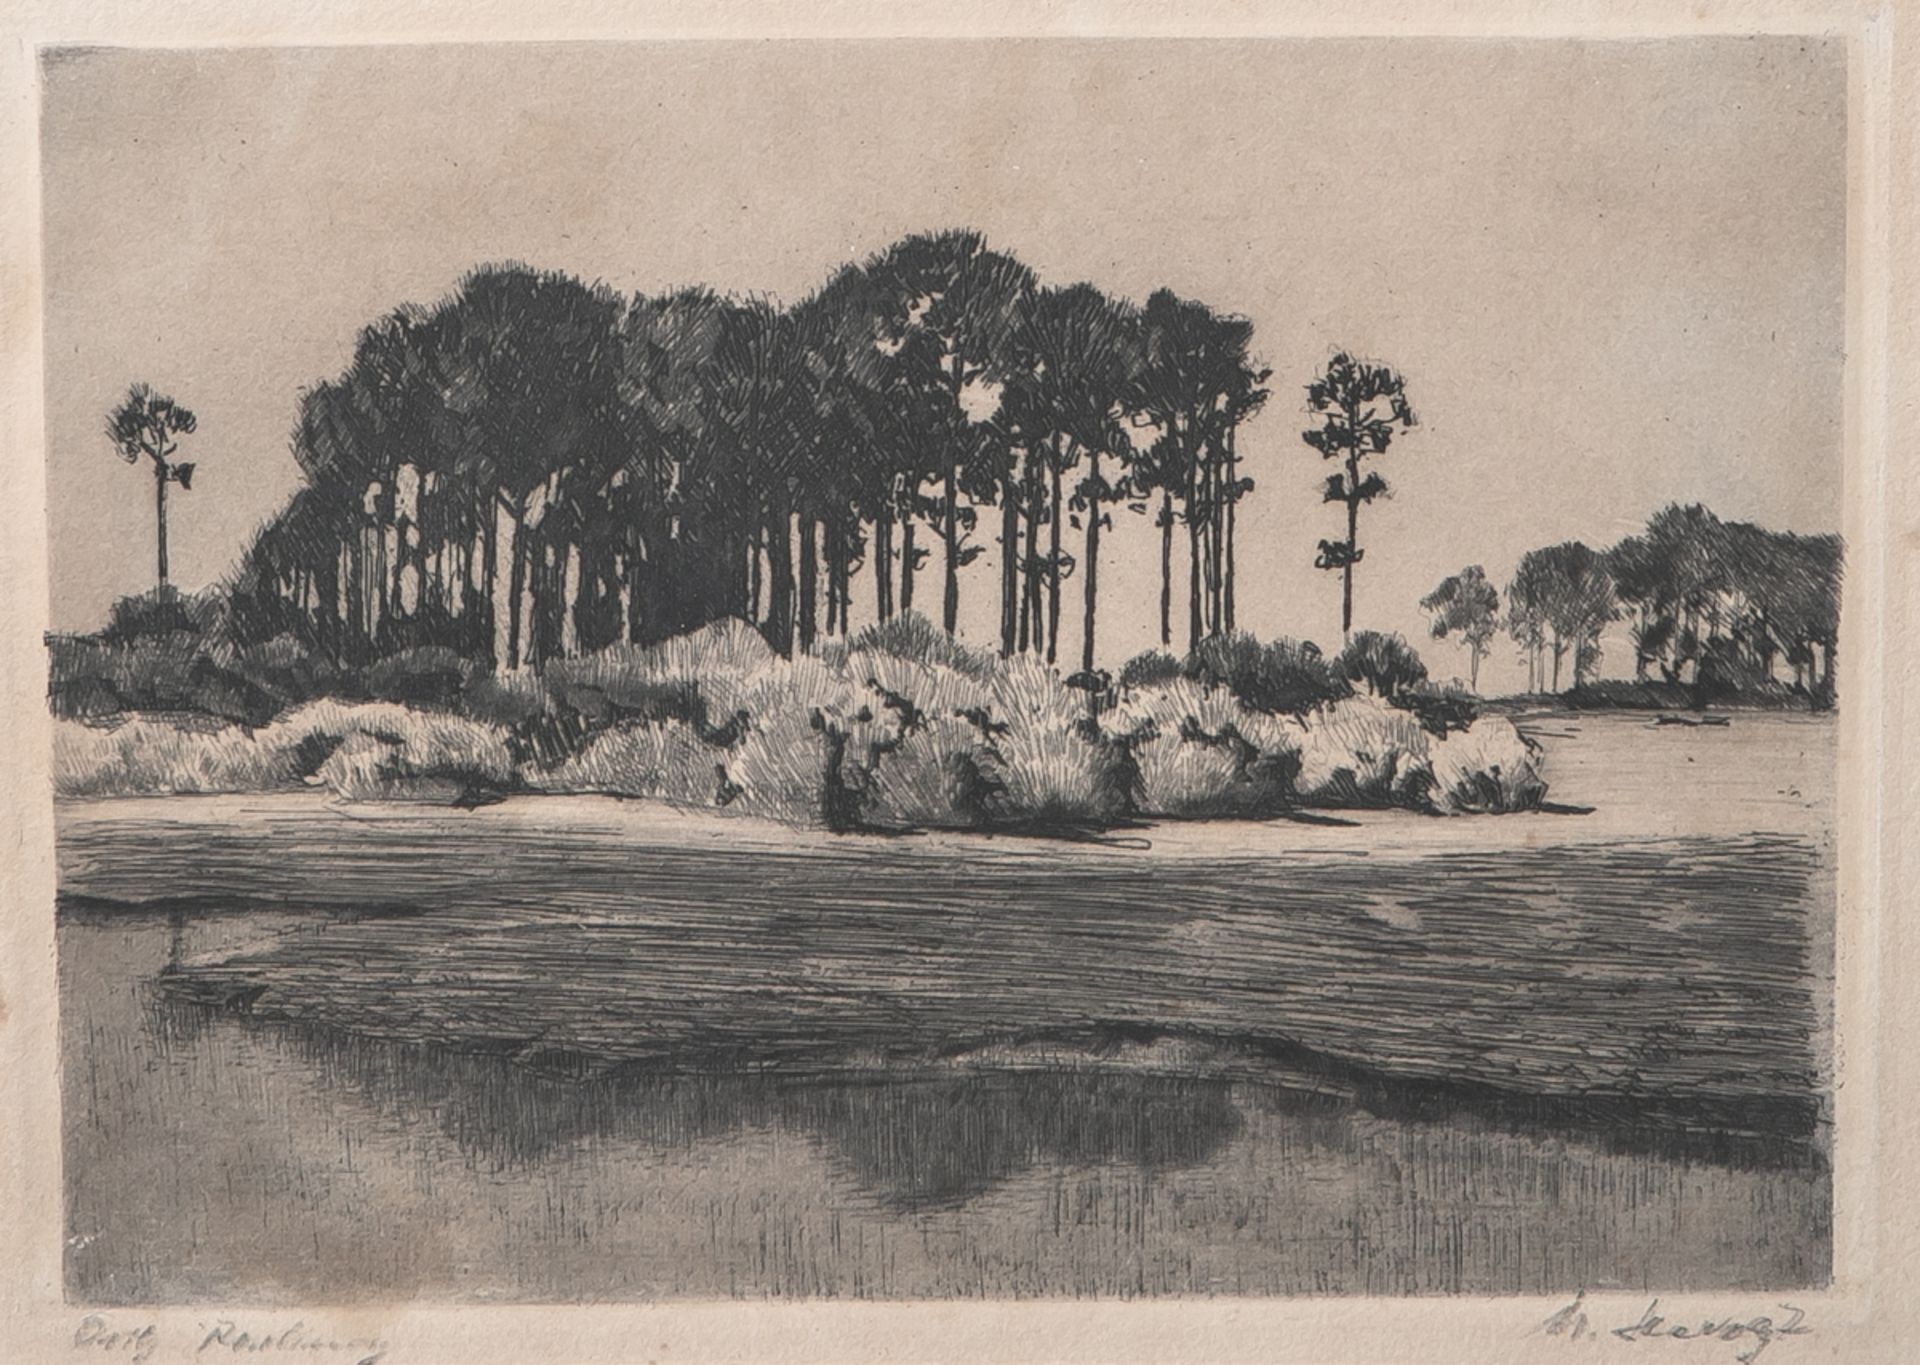 Leistikow, Walter (1865-1908), "Märkische Landschaft", Radierung, re. u. handsign. "M. Slevogt", li.